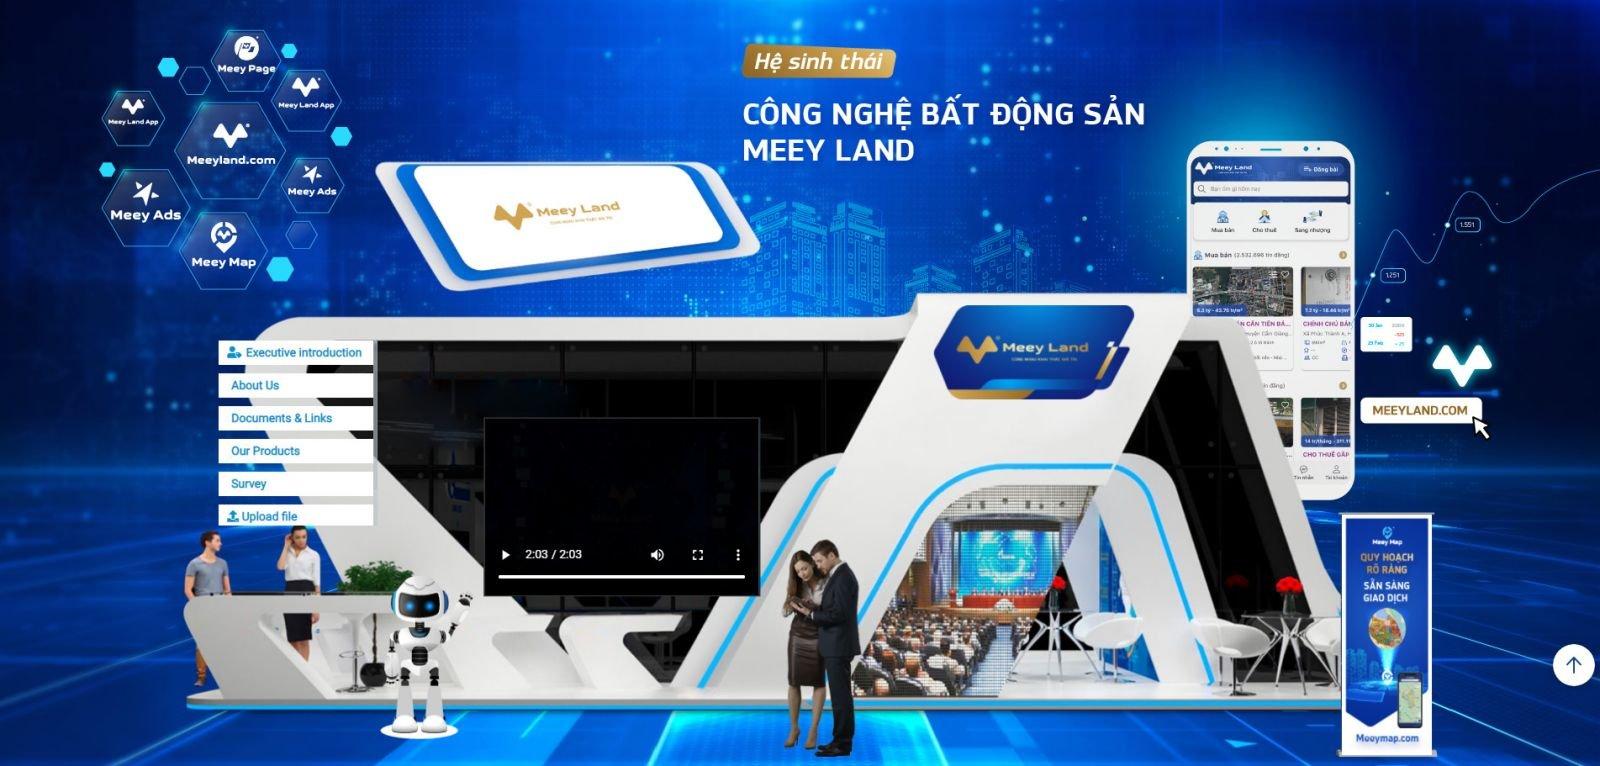 Meey Land lọt Top 10 nhà cung ứng dịch vụ Bất động sản tốt nhất năm 2021 - Ảnh 3.